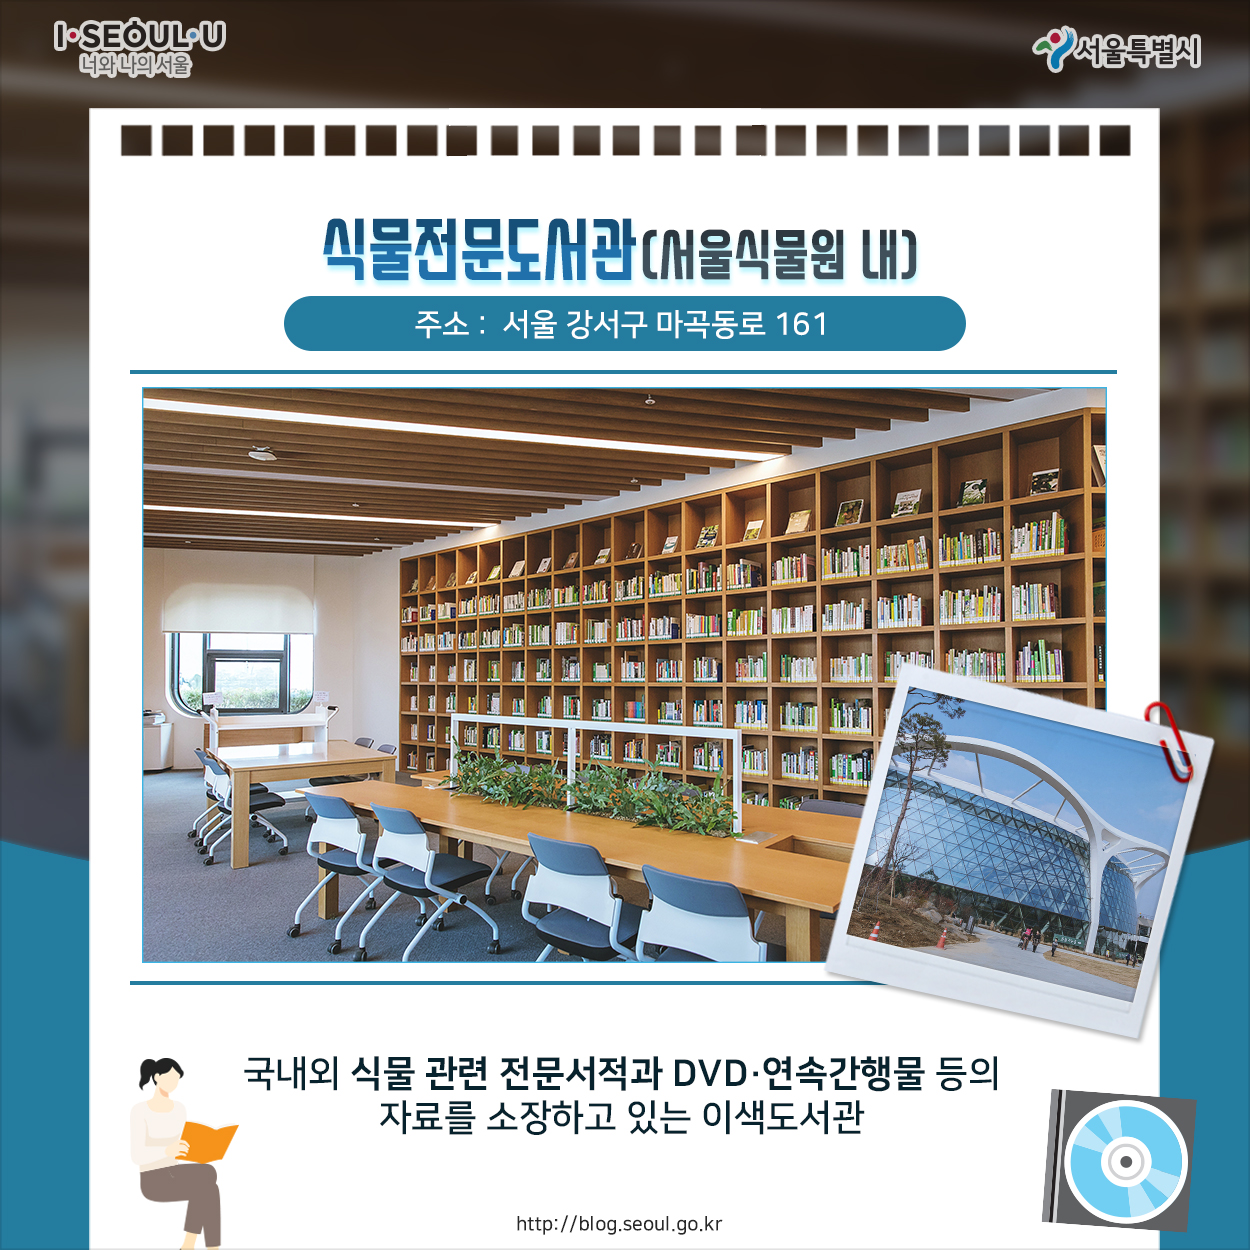 식물전문도서관 (서울 강수구 마곡동로 161 서울식물원 내) 국내외 식물 관련 전문 서적과 DVD, 연속간행물 등의 자료를 소장하고 있는 이색도서관